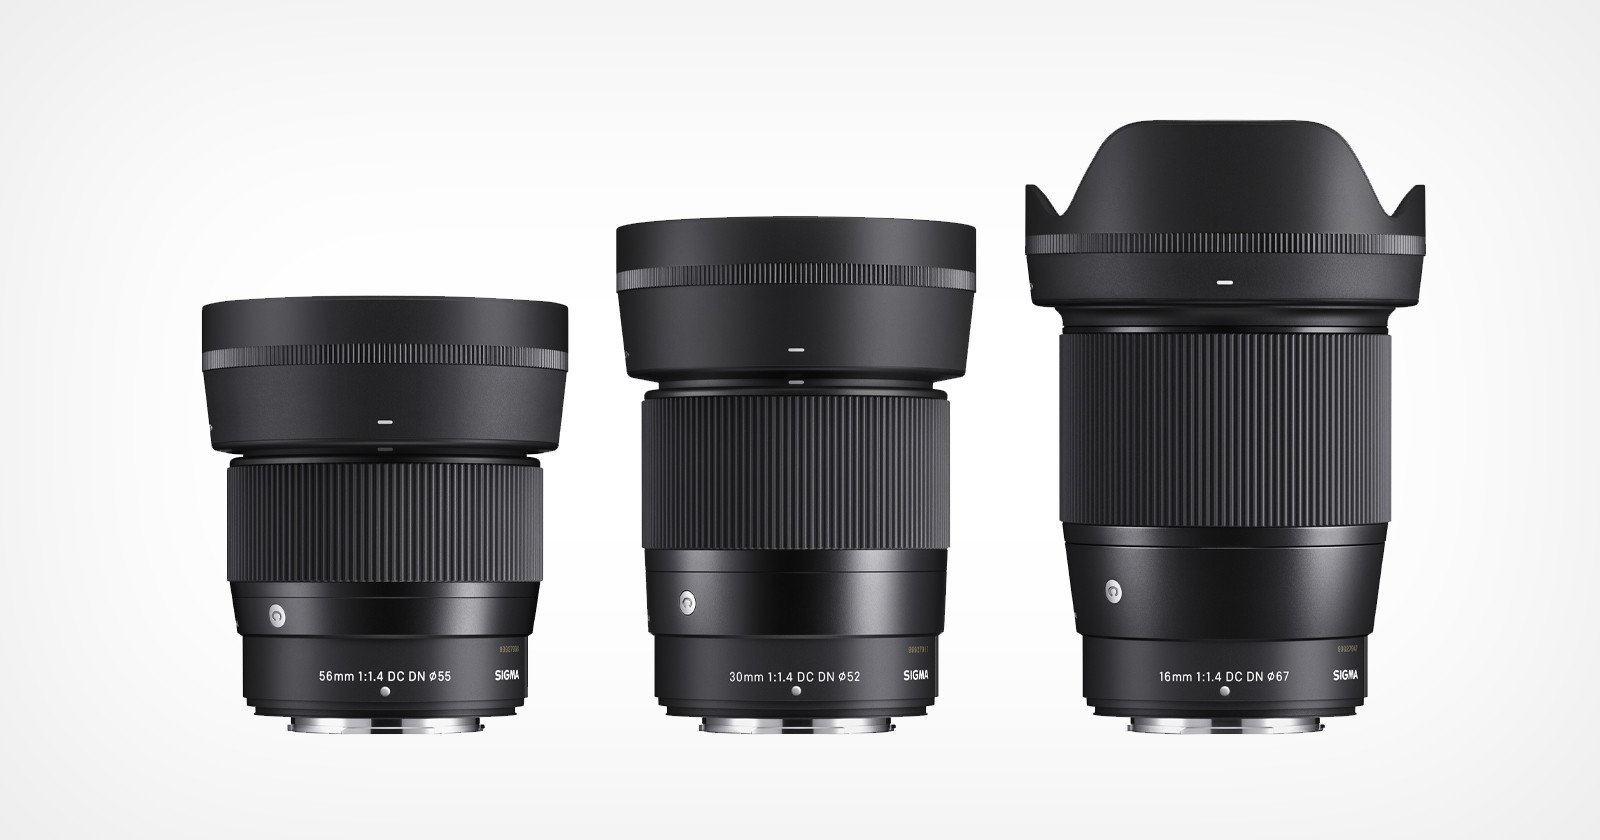 Sigma Unveils First Fuji X Lenses: 16mm f/1.4, 30mm f/1.4, 56mm f/1.4